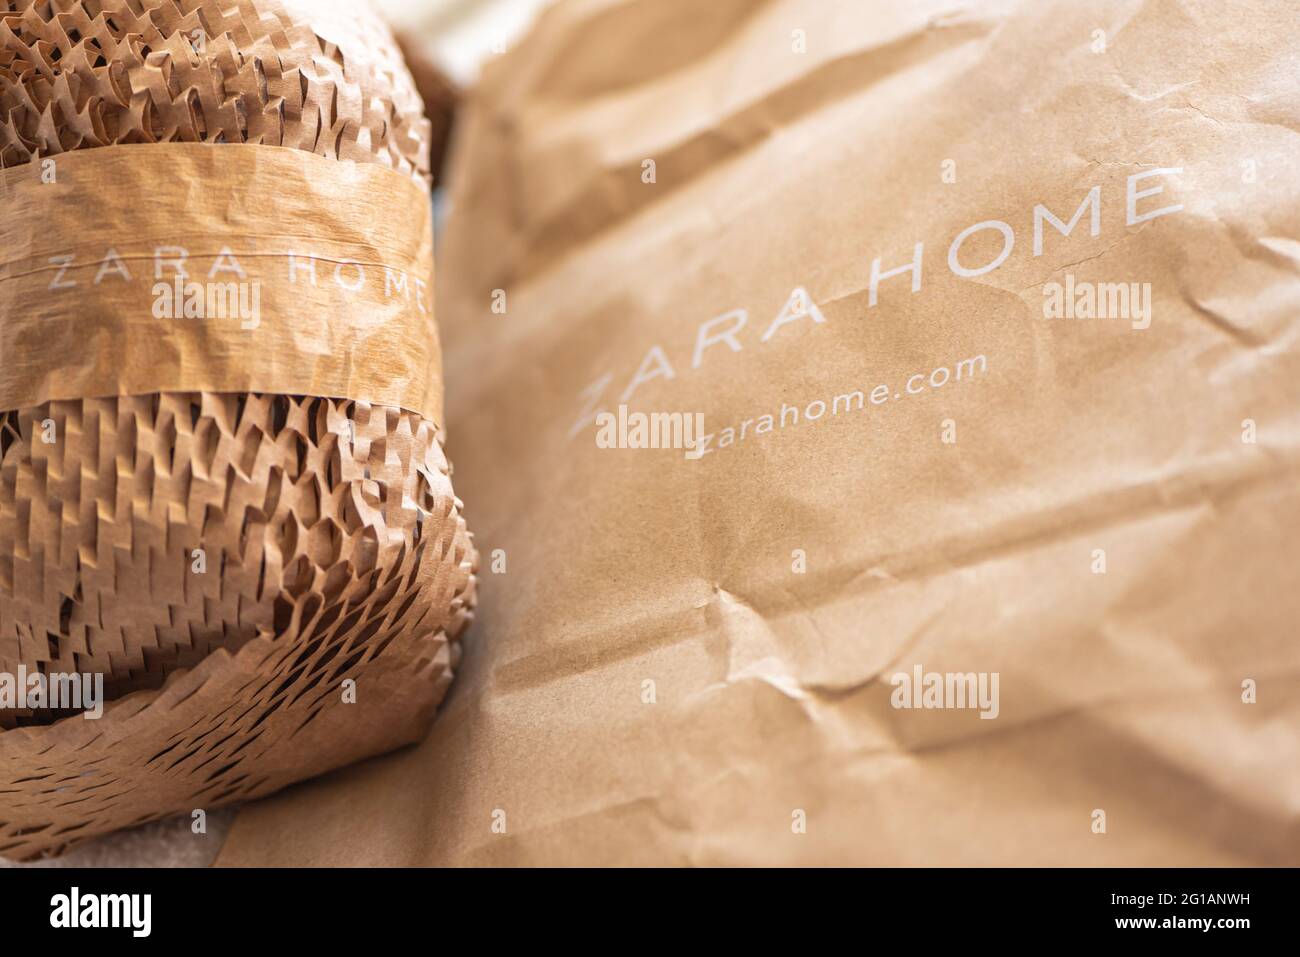 Papel de embalaje con nombre de marca Zara en la luz brillante Foto de stock